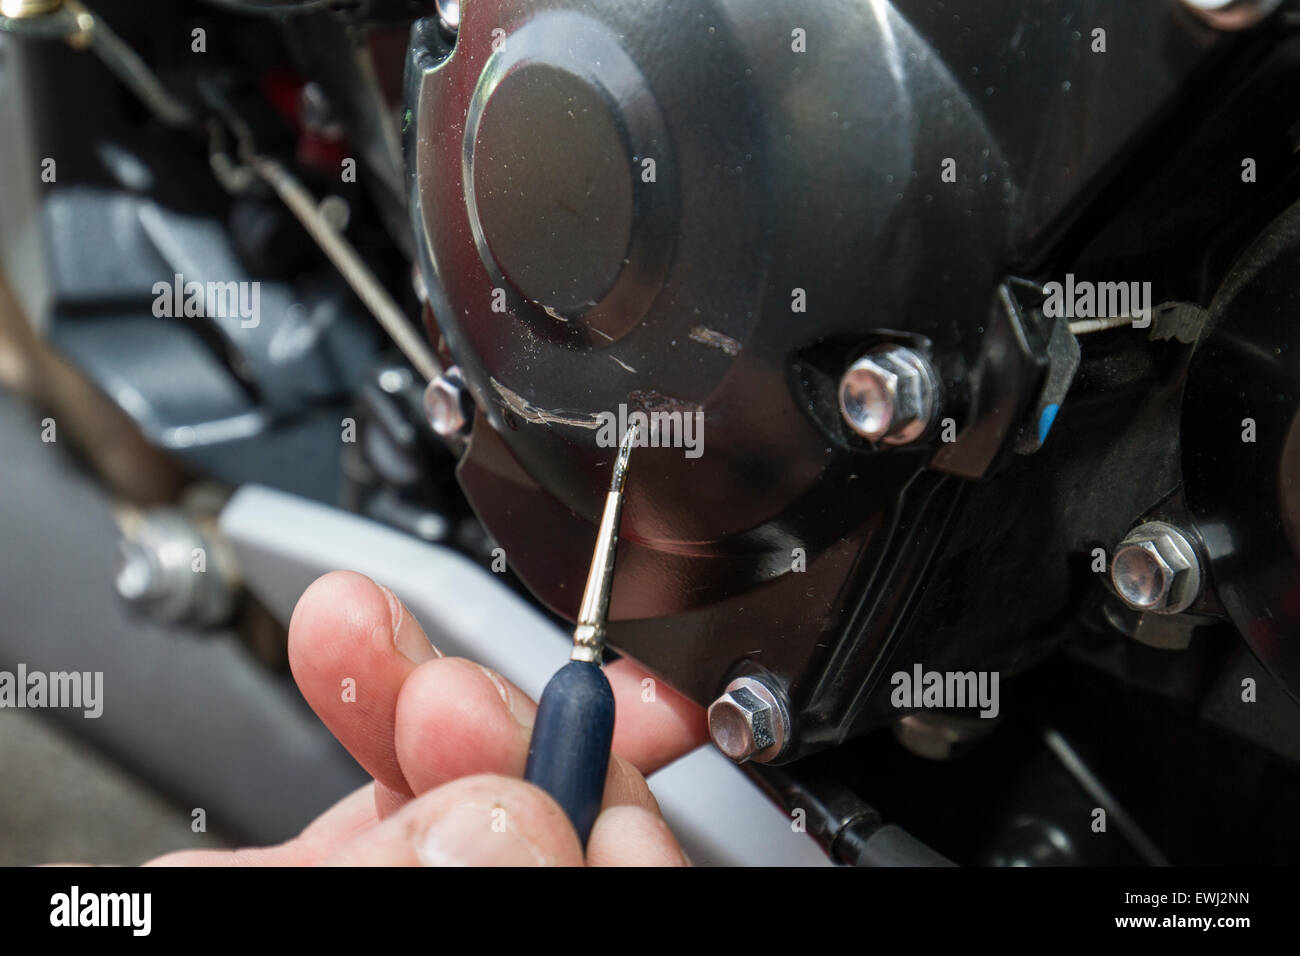 Malerei-Kratzer am Kurbelgehäuse auf Motorrad Stockfotografie - Alamy